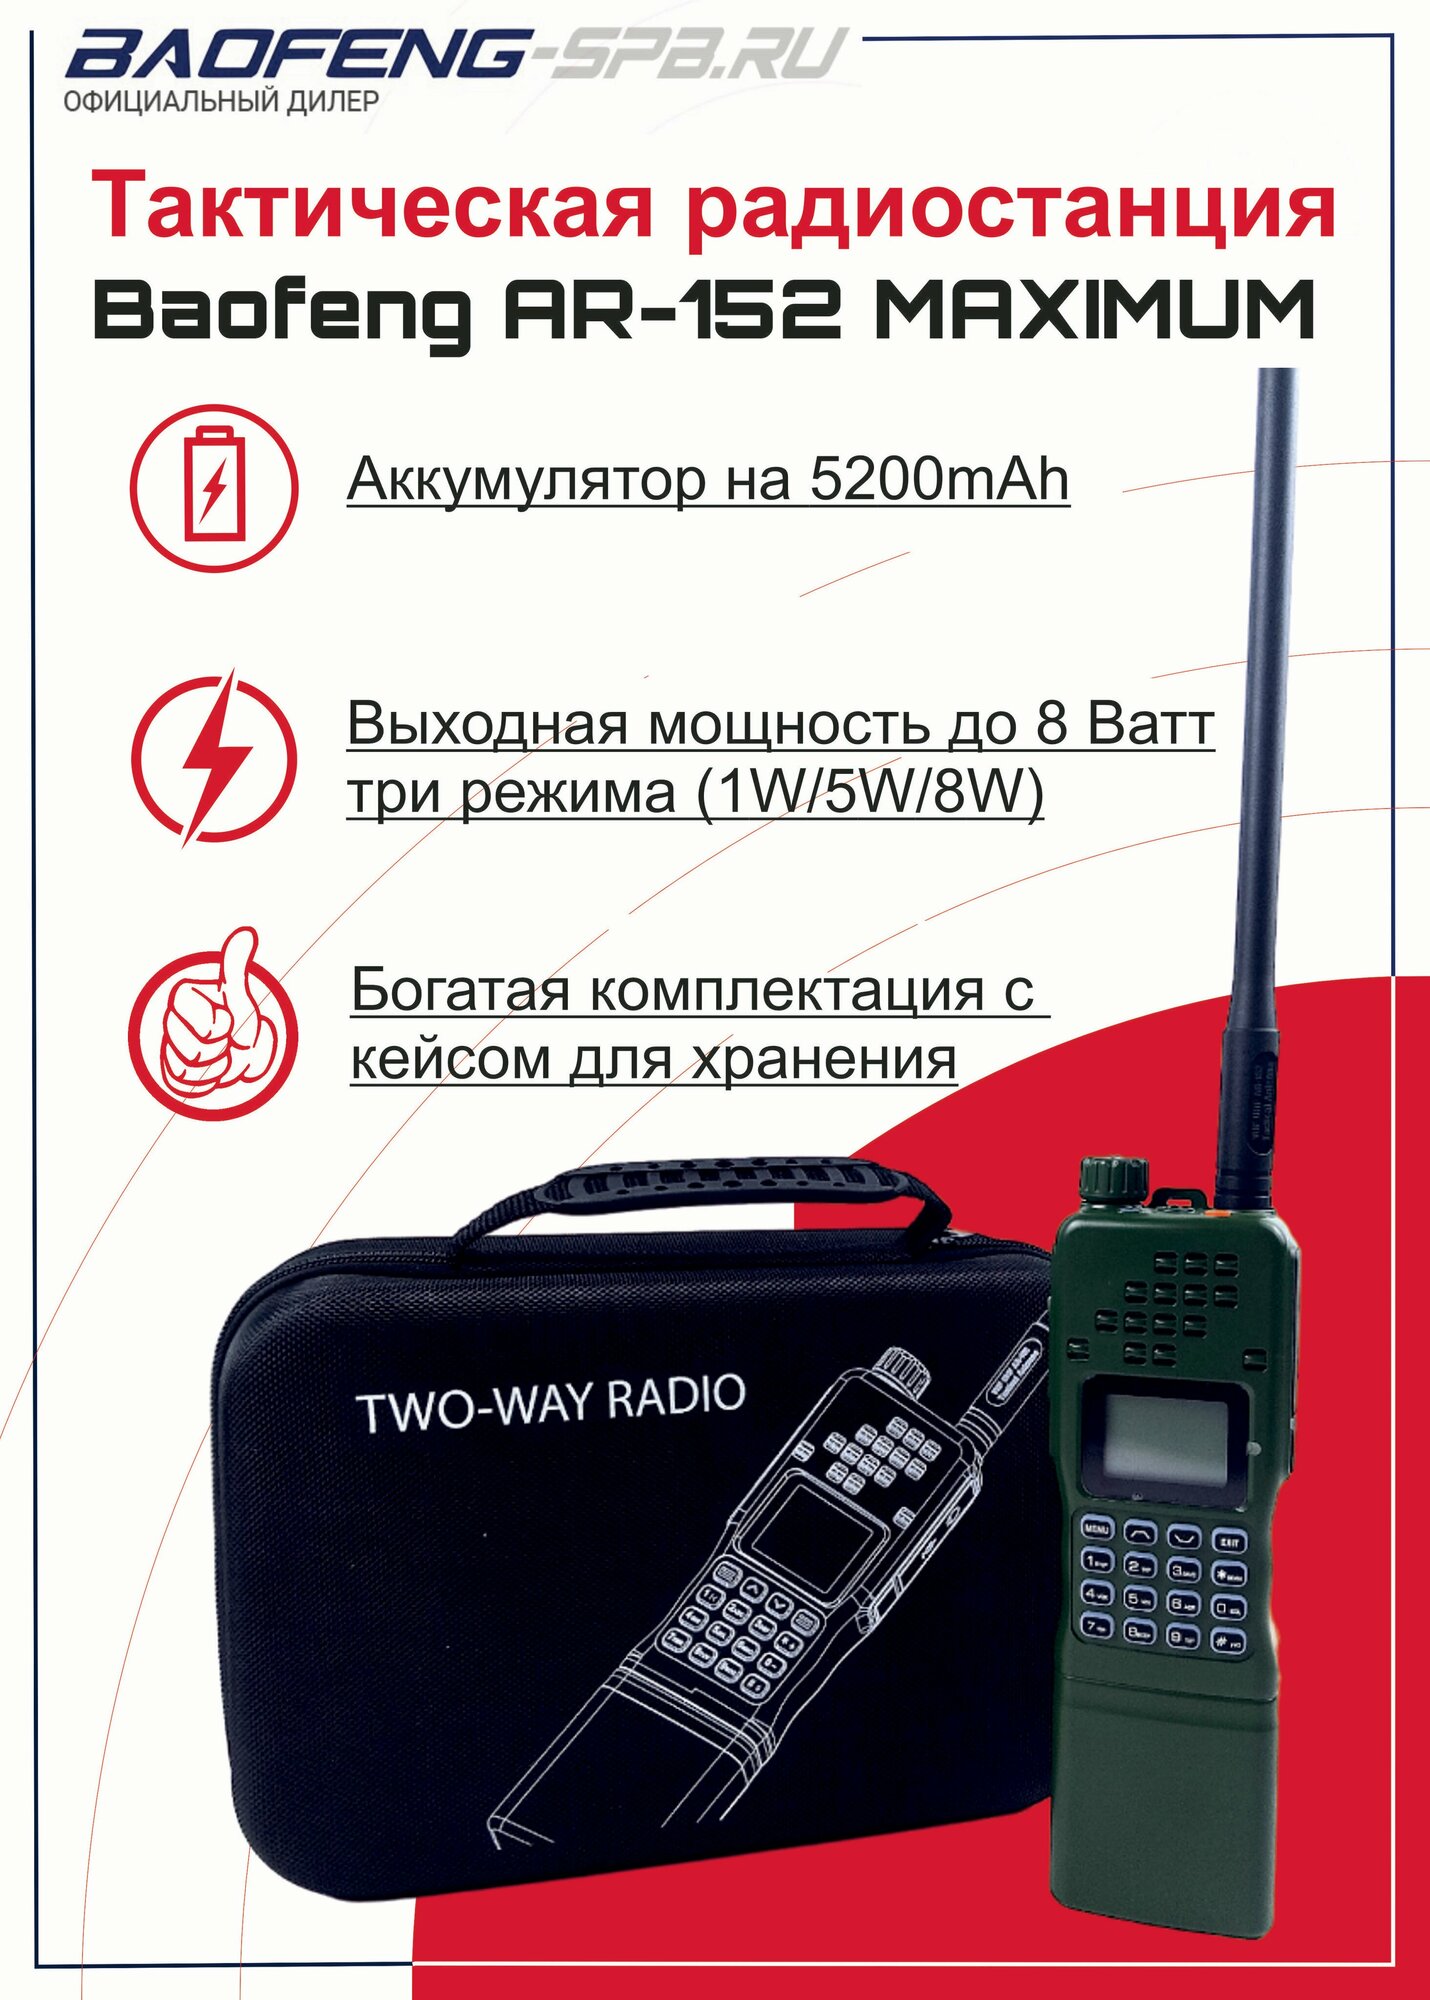 Рация портативная Baofeng AR-152 зеленая maximum